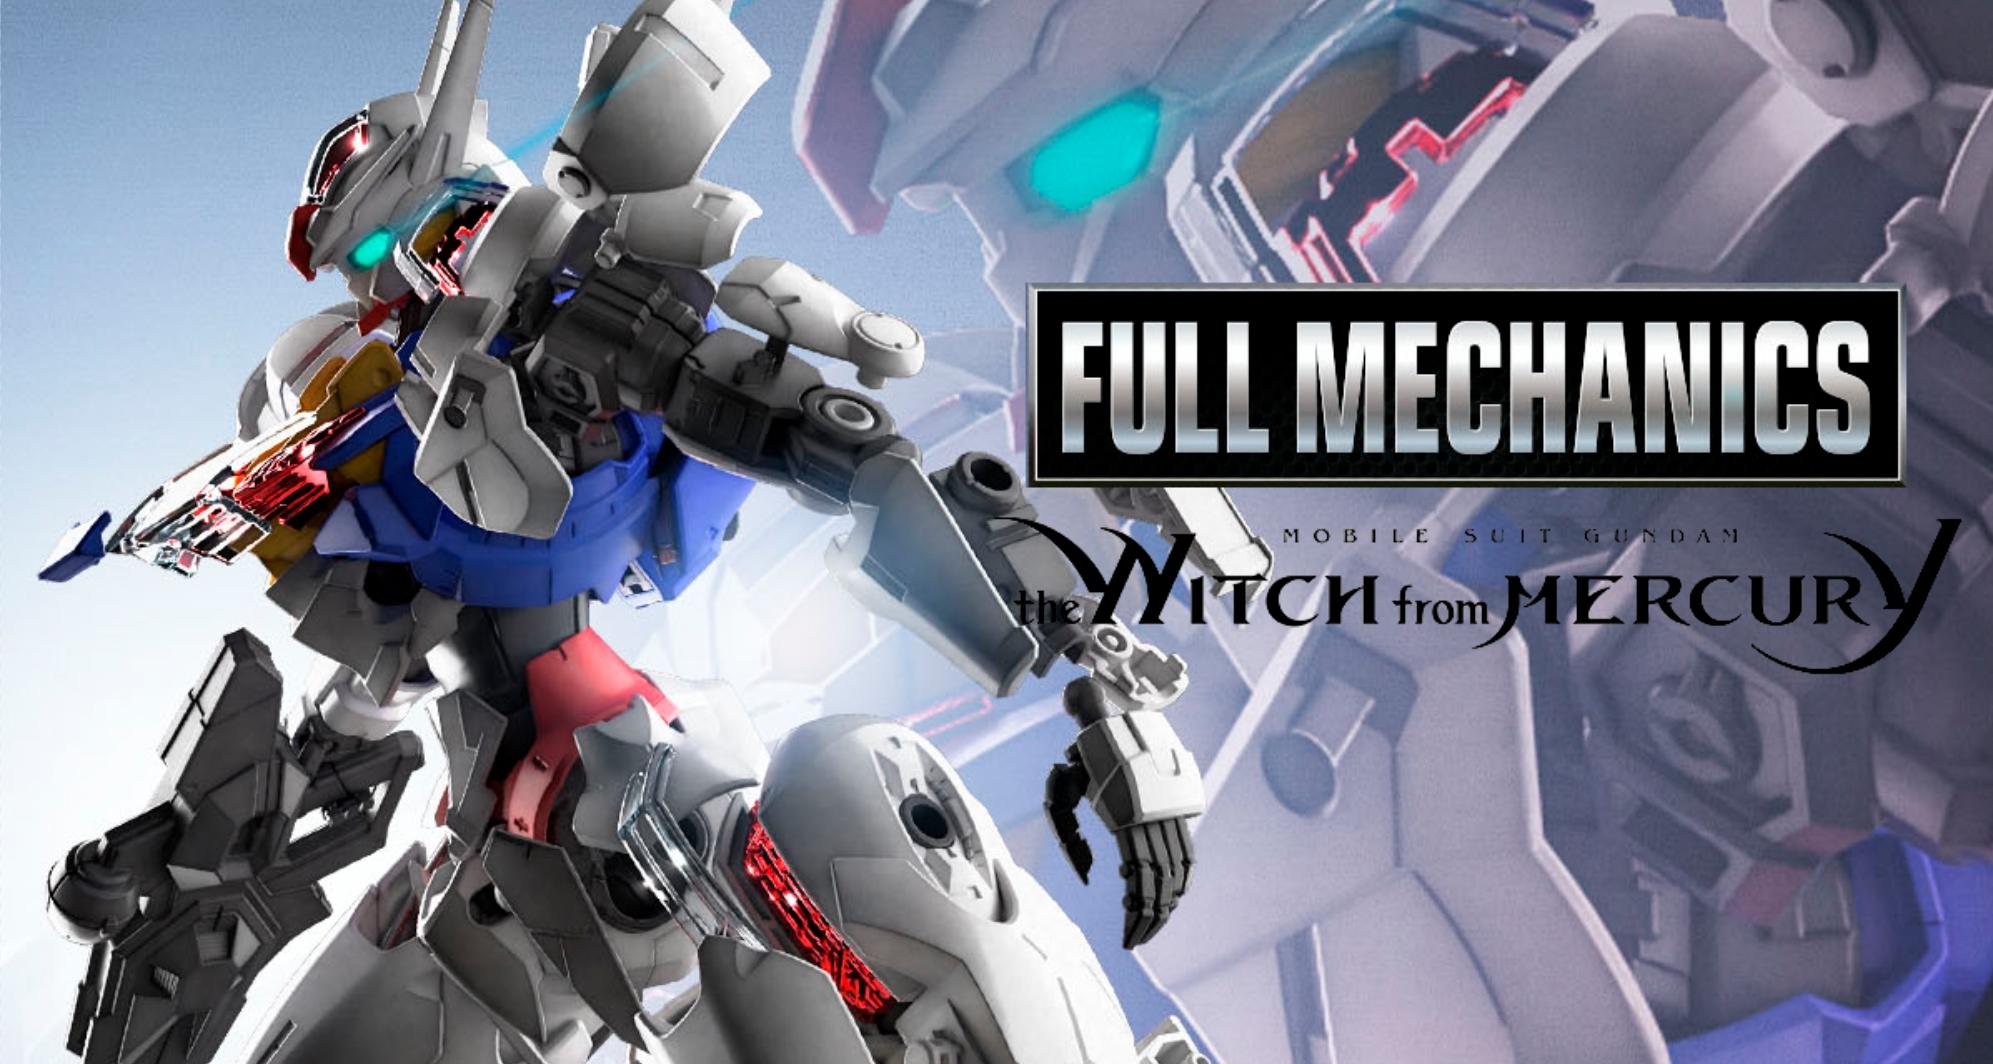 Full Mechanics 1/100 Gundam Aerial XVX-016 Witch from Mercury Bandai Japan  NEW